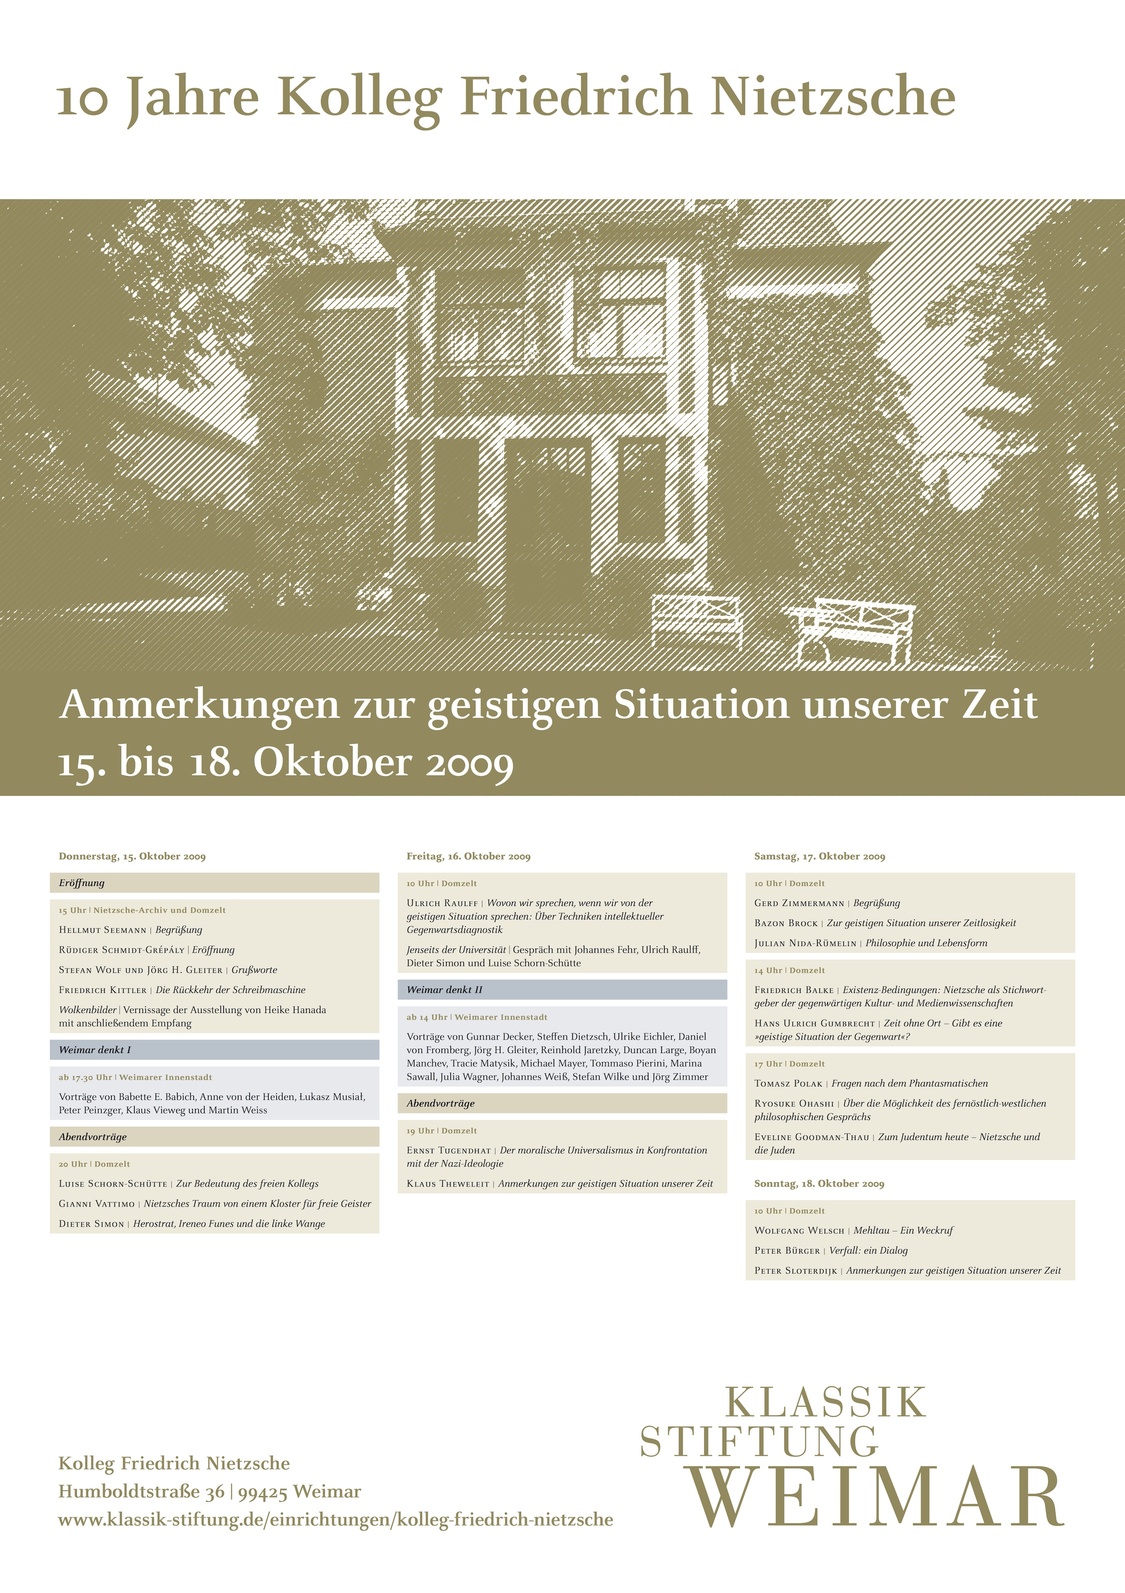 10 Jahre Kolleg Friedrich Nietzsche der Klassik Stiftung Weimar, Bild: Weimar, 15.-18.10.2009. Gestaltung: Goldwiege.